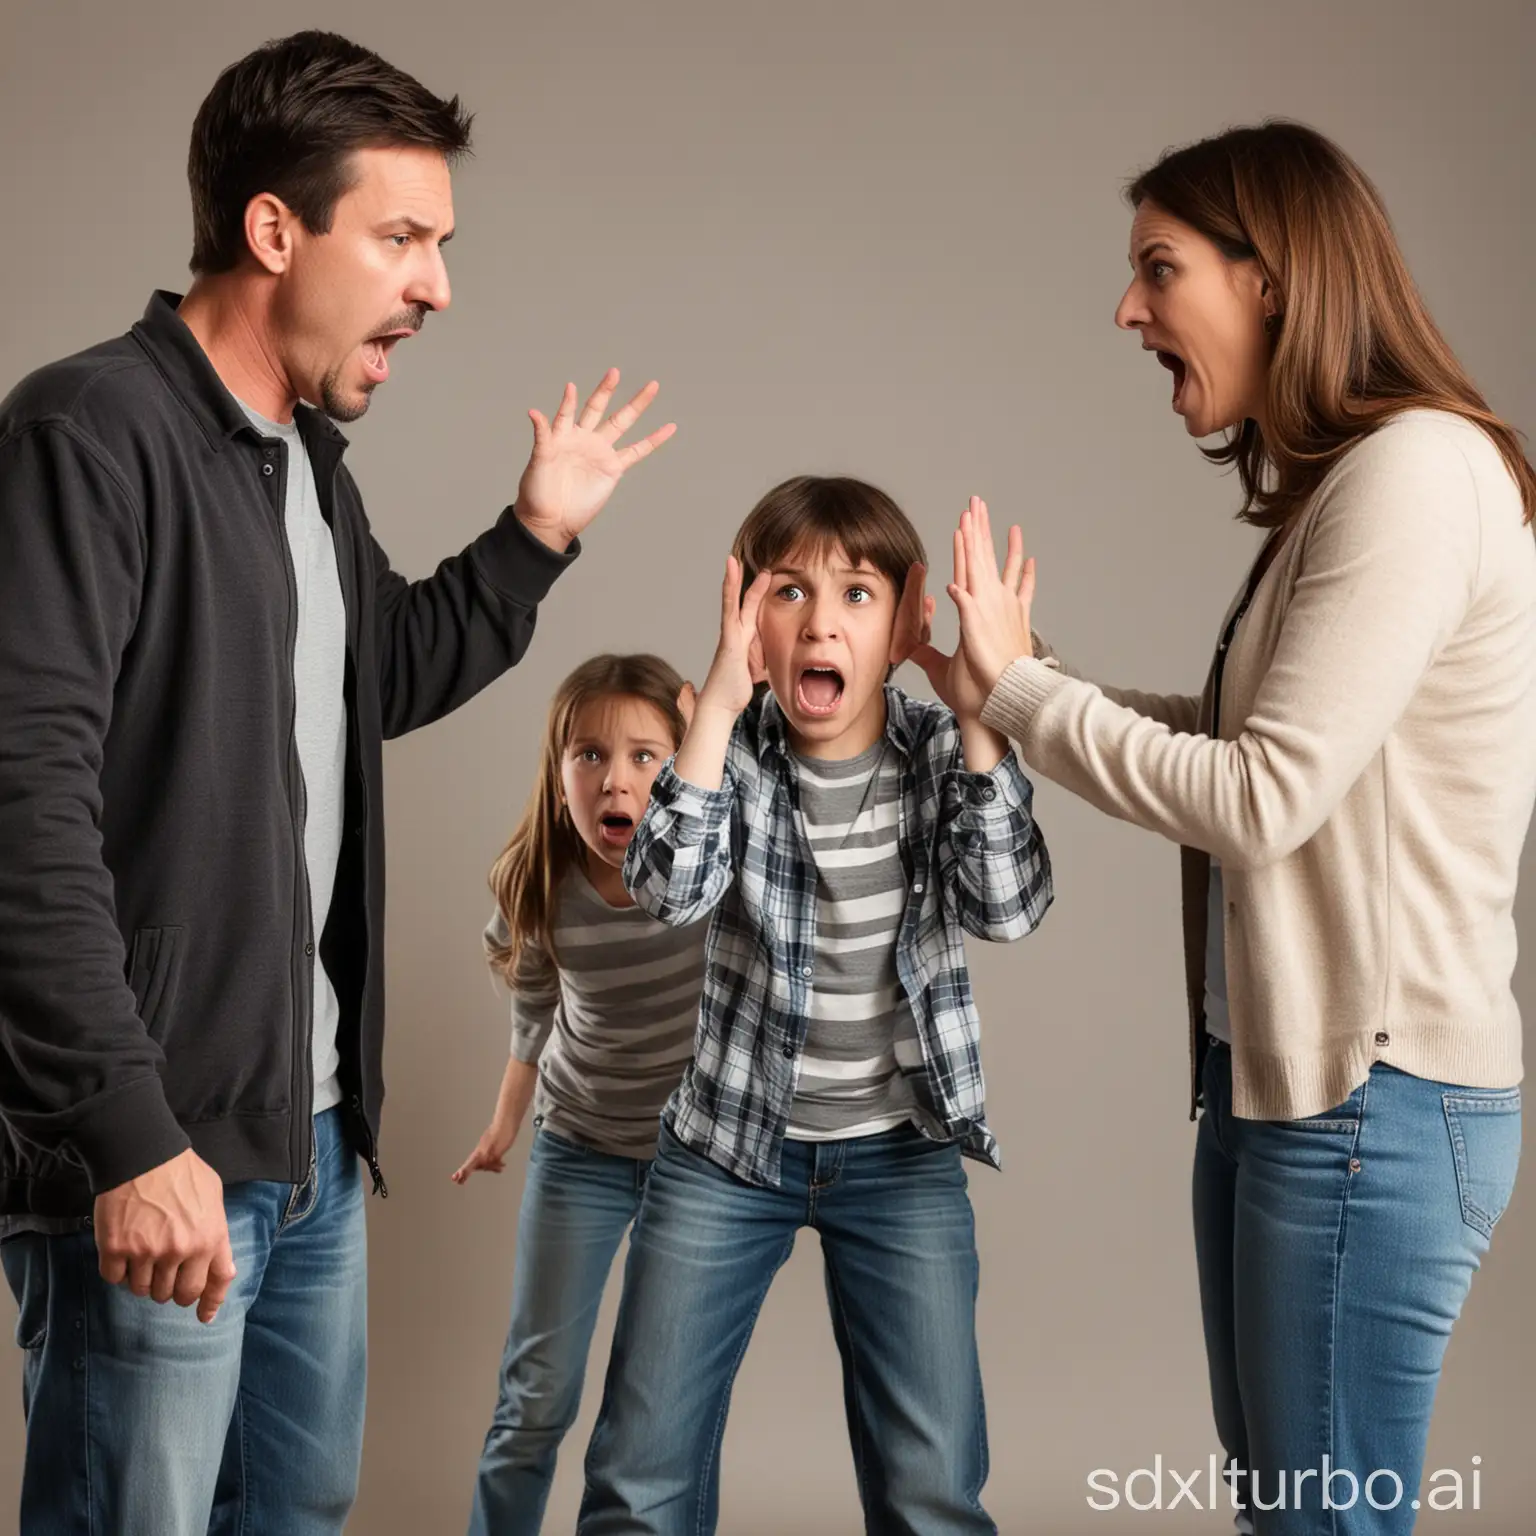 Streitende Eltern mit einem verängstigten Kind in der Mitte.
Der Vater links, die Mutter rechts.
Das Kind ist ein 11 jähriger Junge.